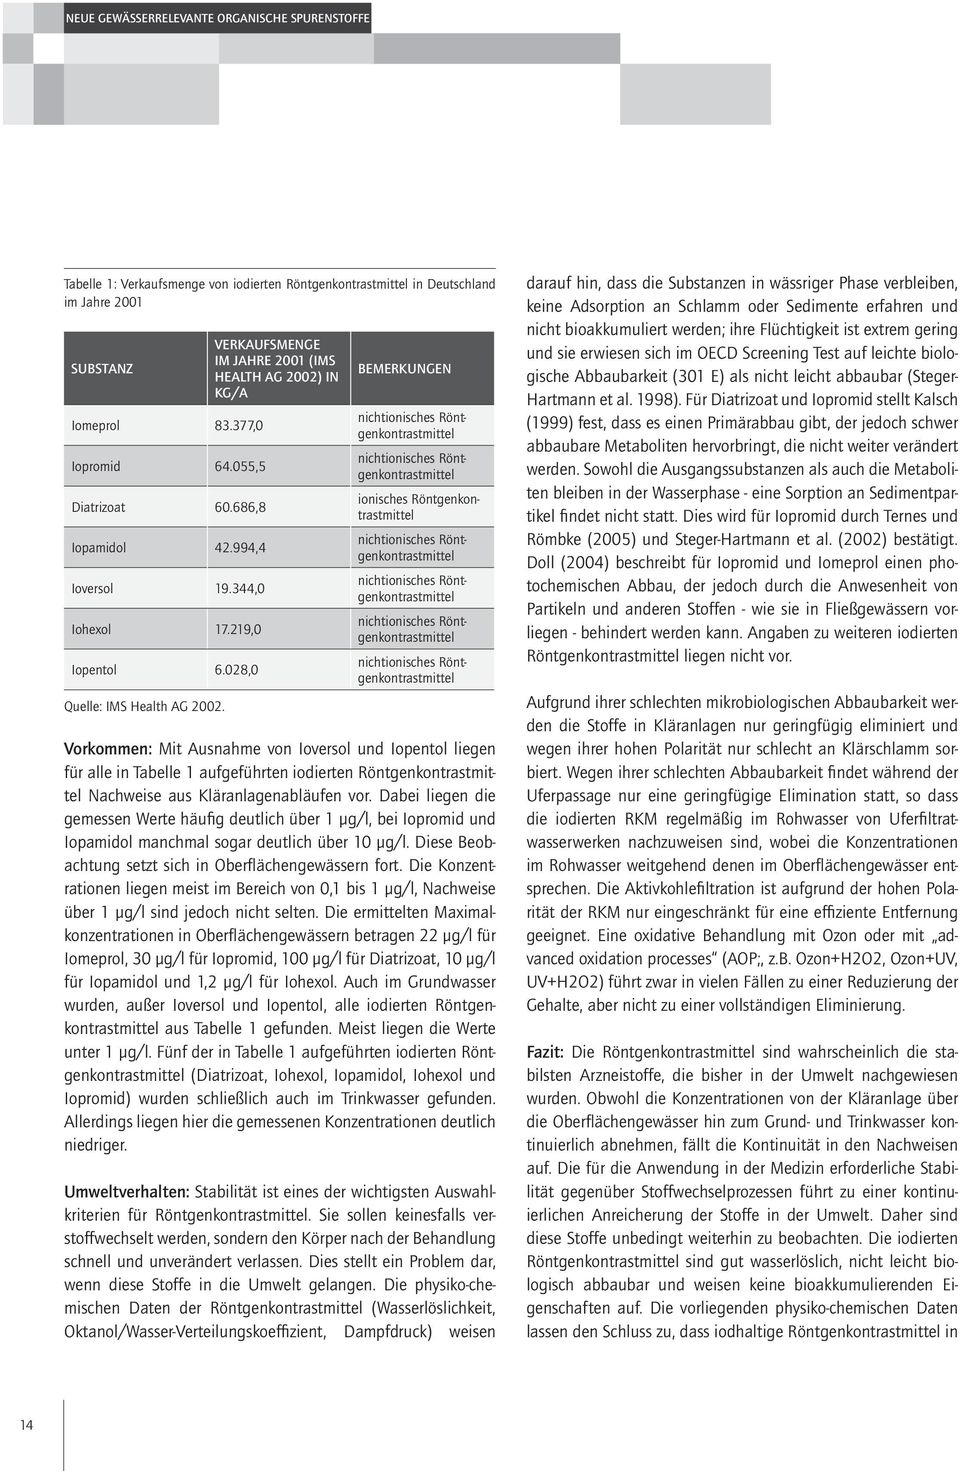 Verkaufsmenge im Jahre 2001 (IMS Health AG 2002) in kg/a Bemerkungen nichtionisches Röntgenkontrastmittel nichtionisches Röntgenkontrastmittel ionisches Röntgenkontrastmittel nichtionisches